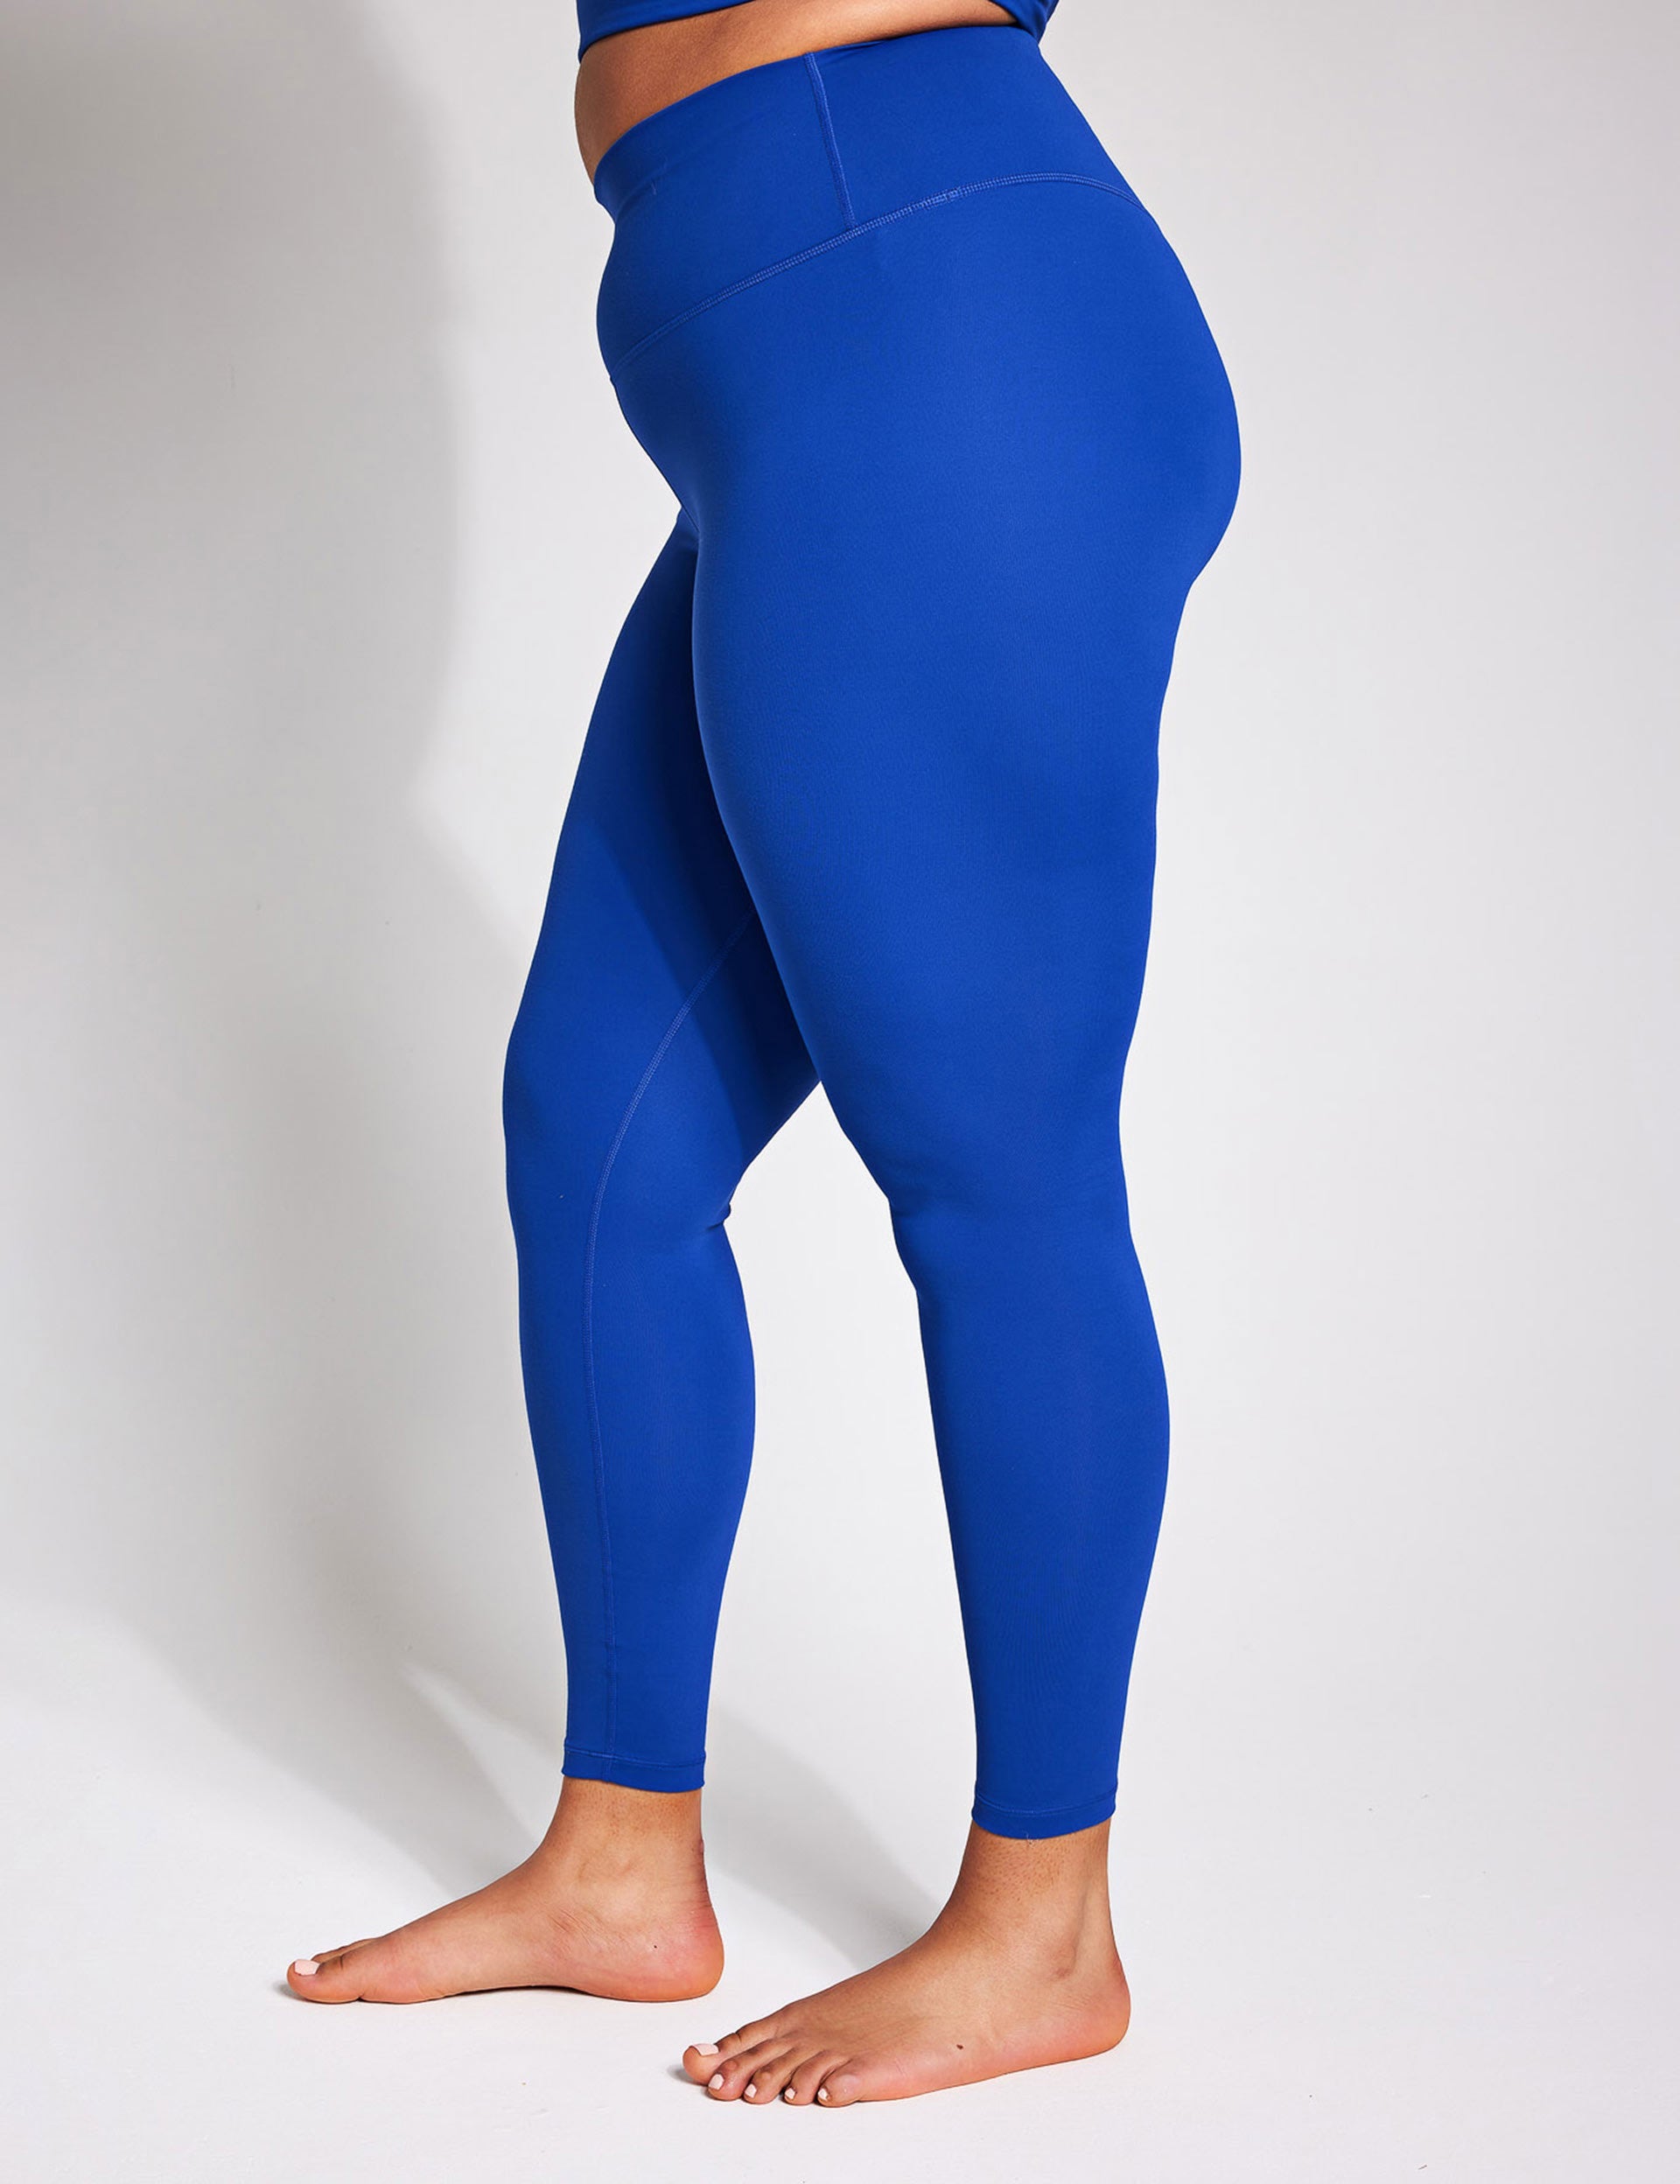 LAVRA Women's Full Length Shimmer Leggings Metallic Liquid  Dance-Medium-Blue 